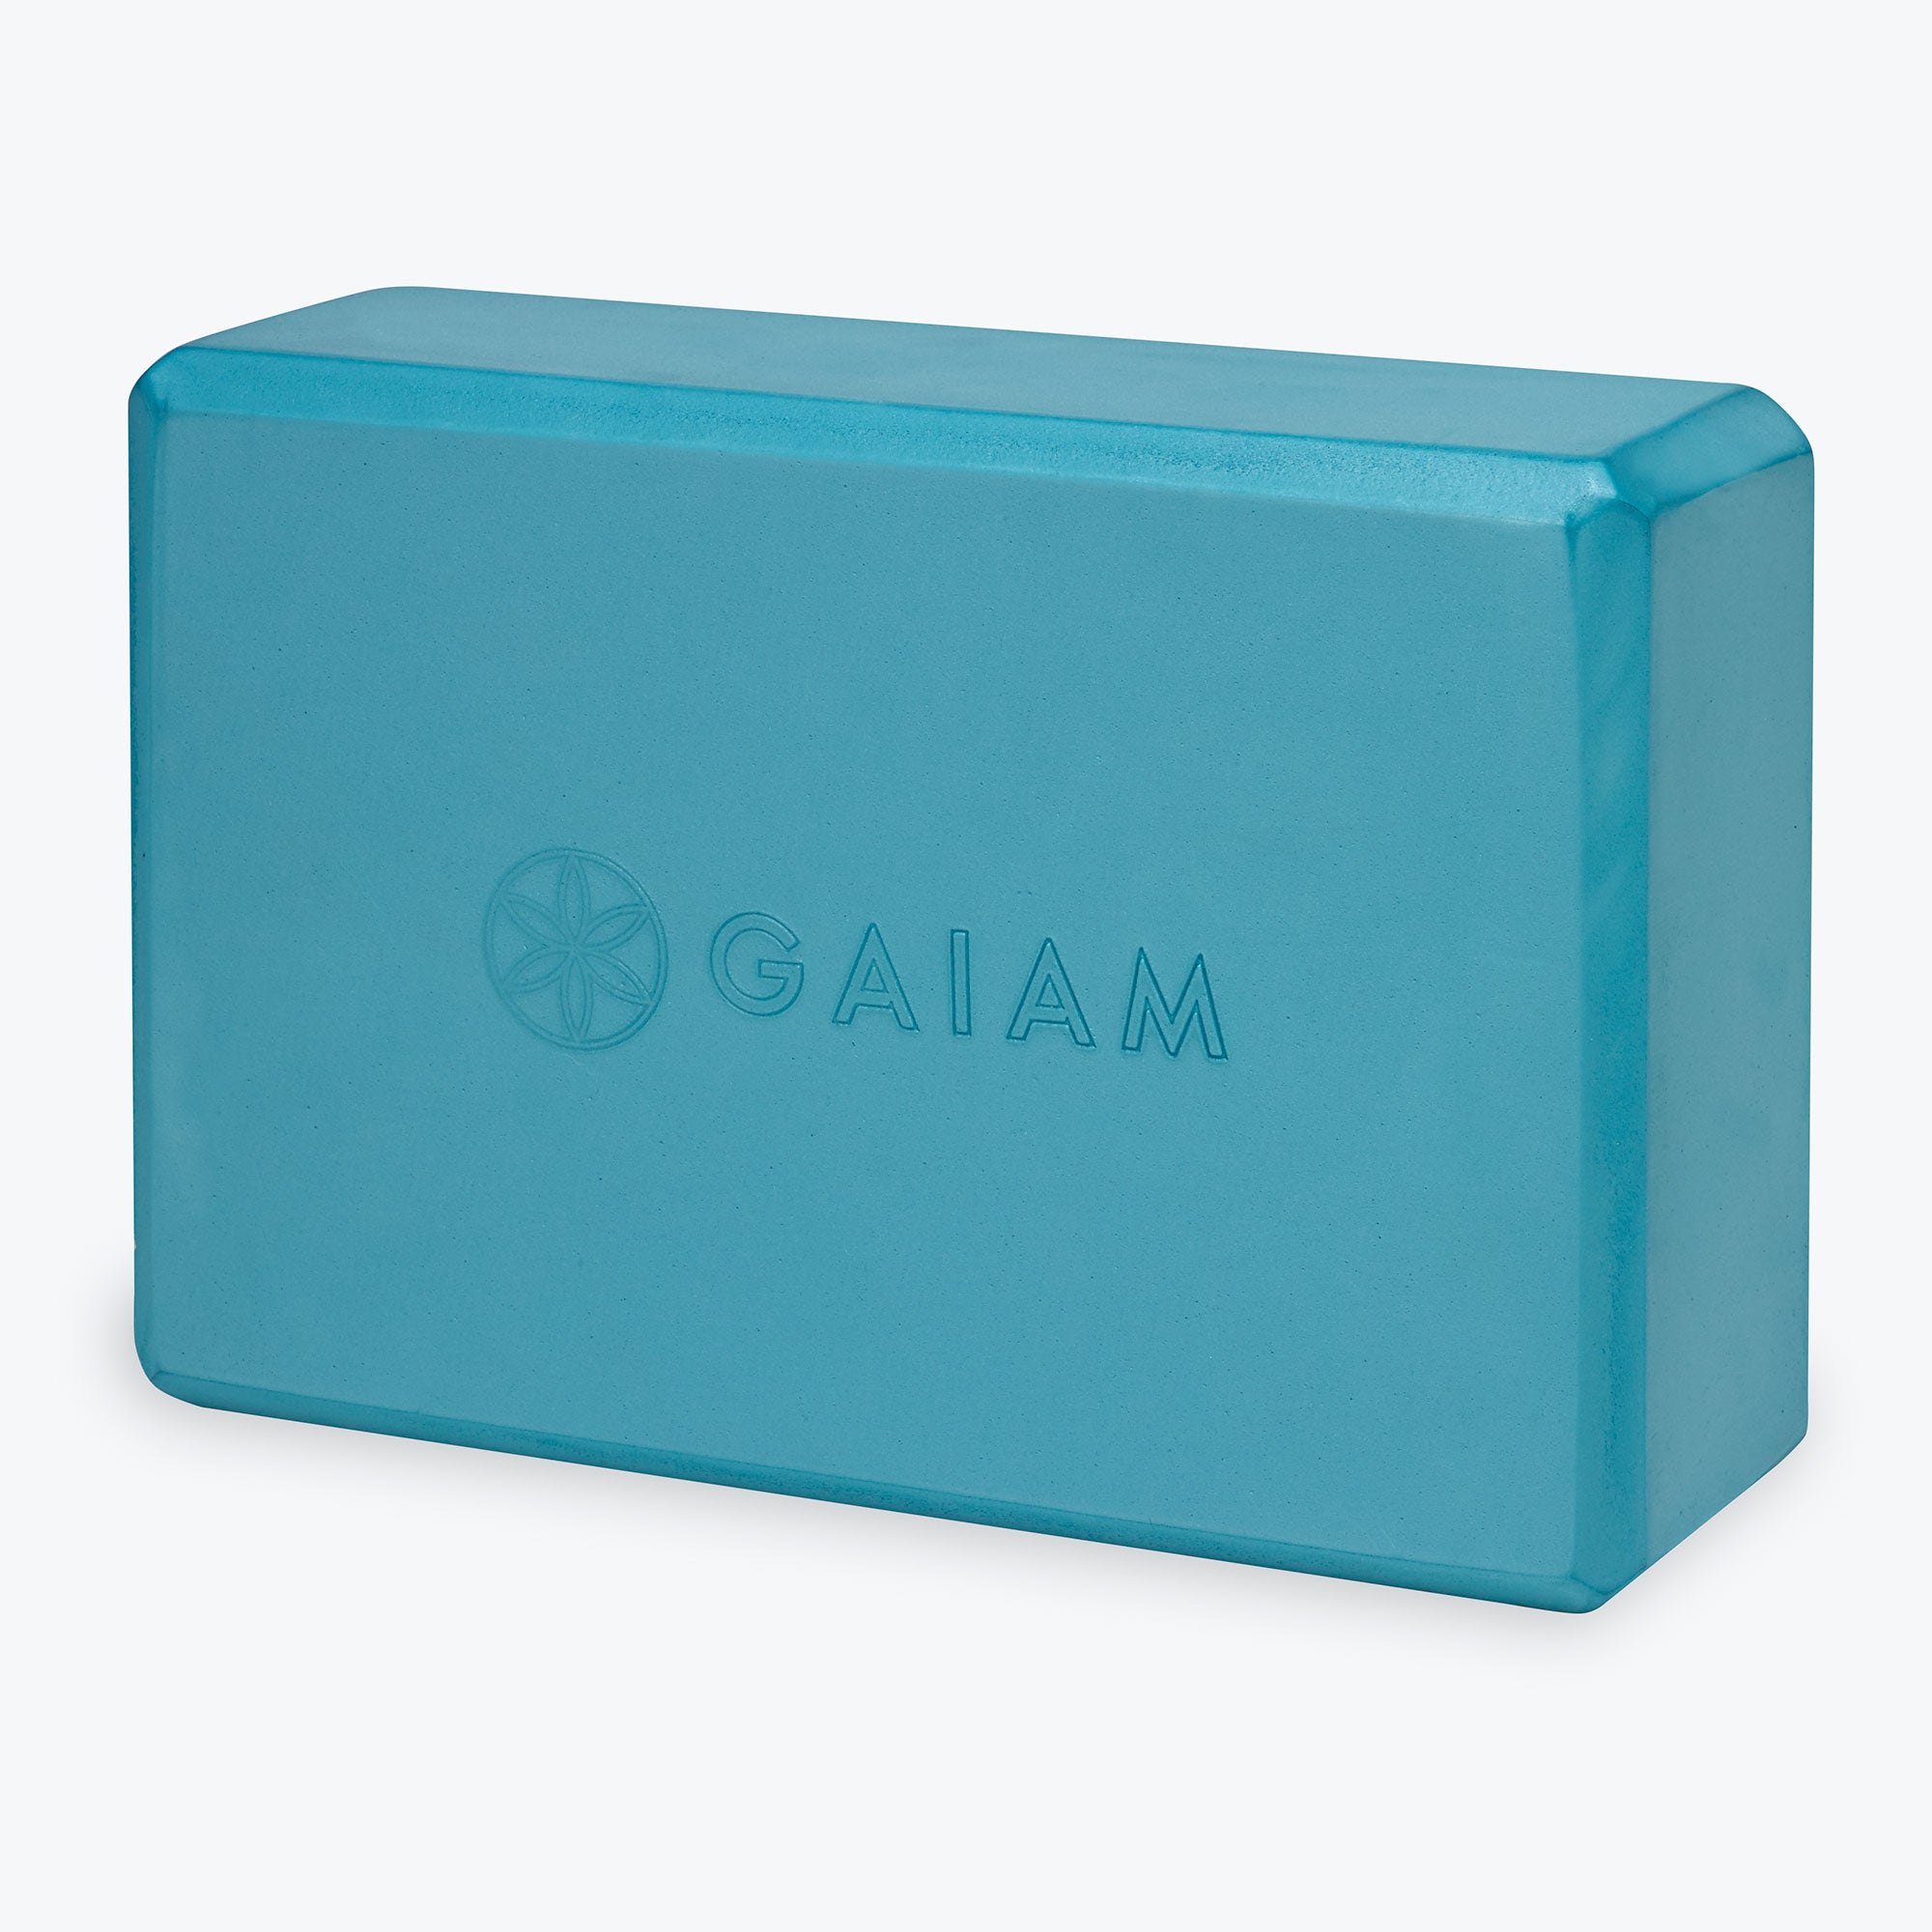 Premium Cushion & Support Yoga Kit - Gaiam